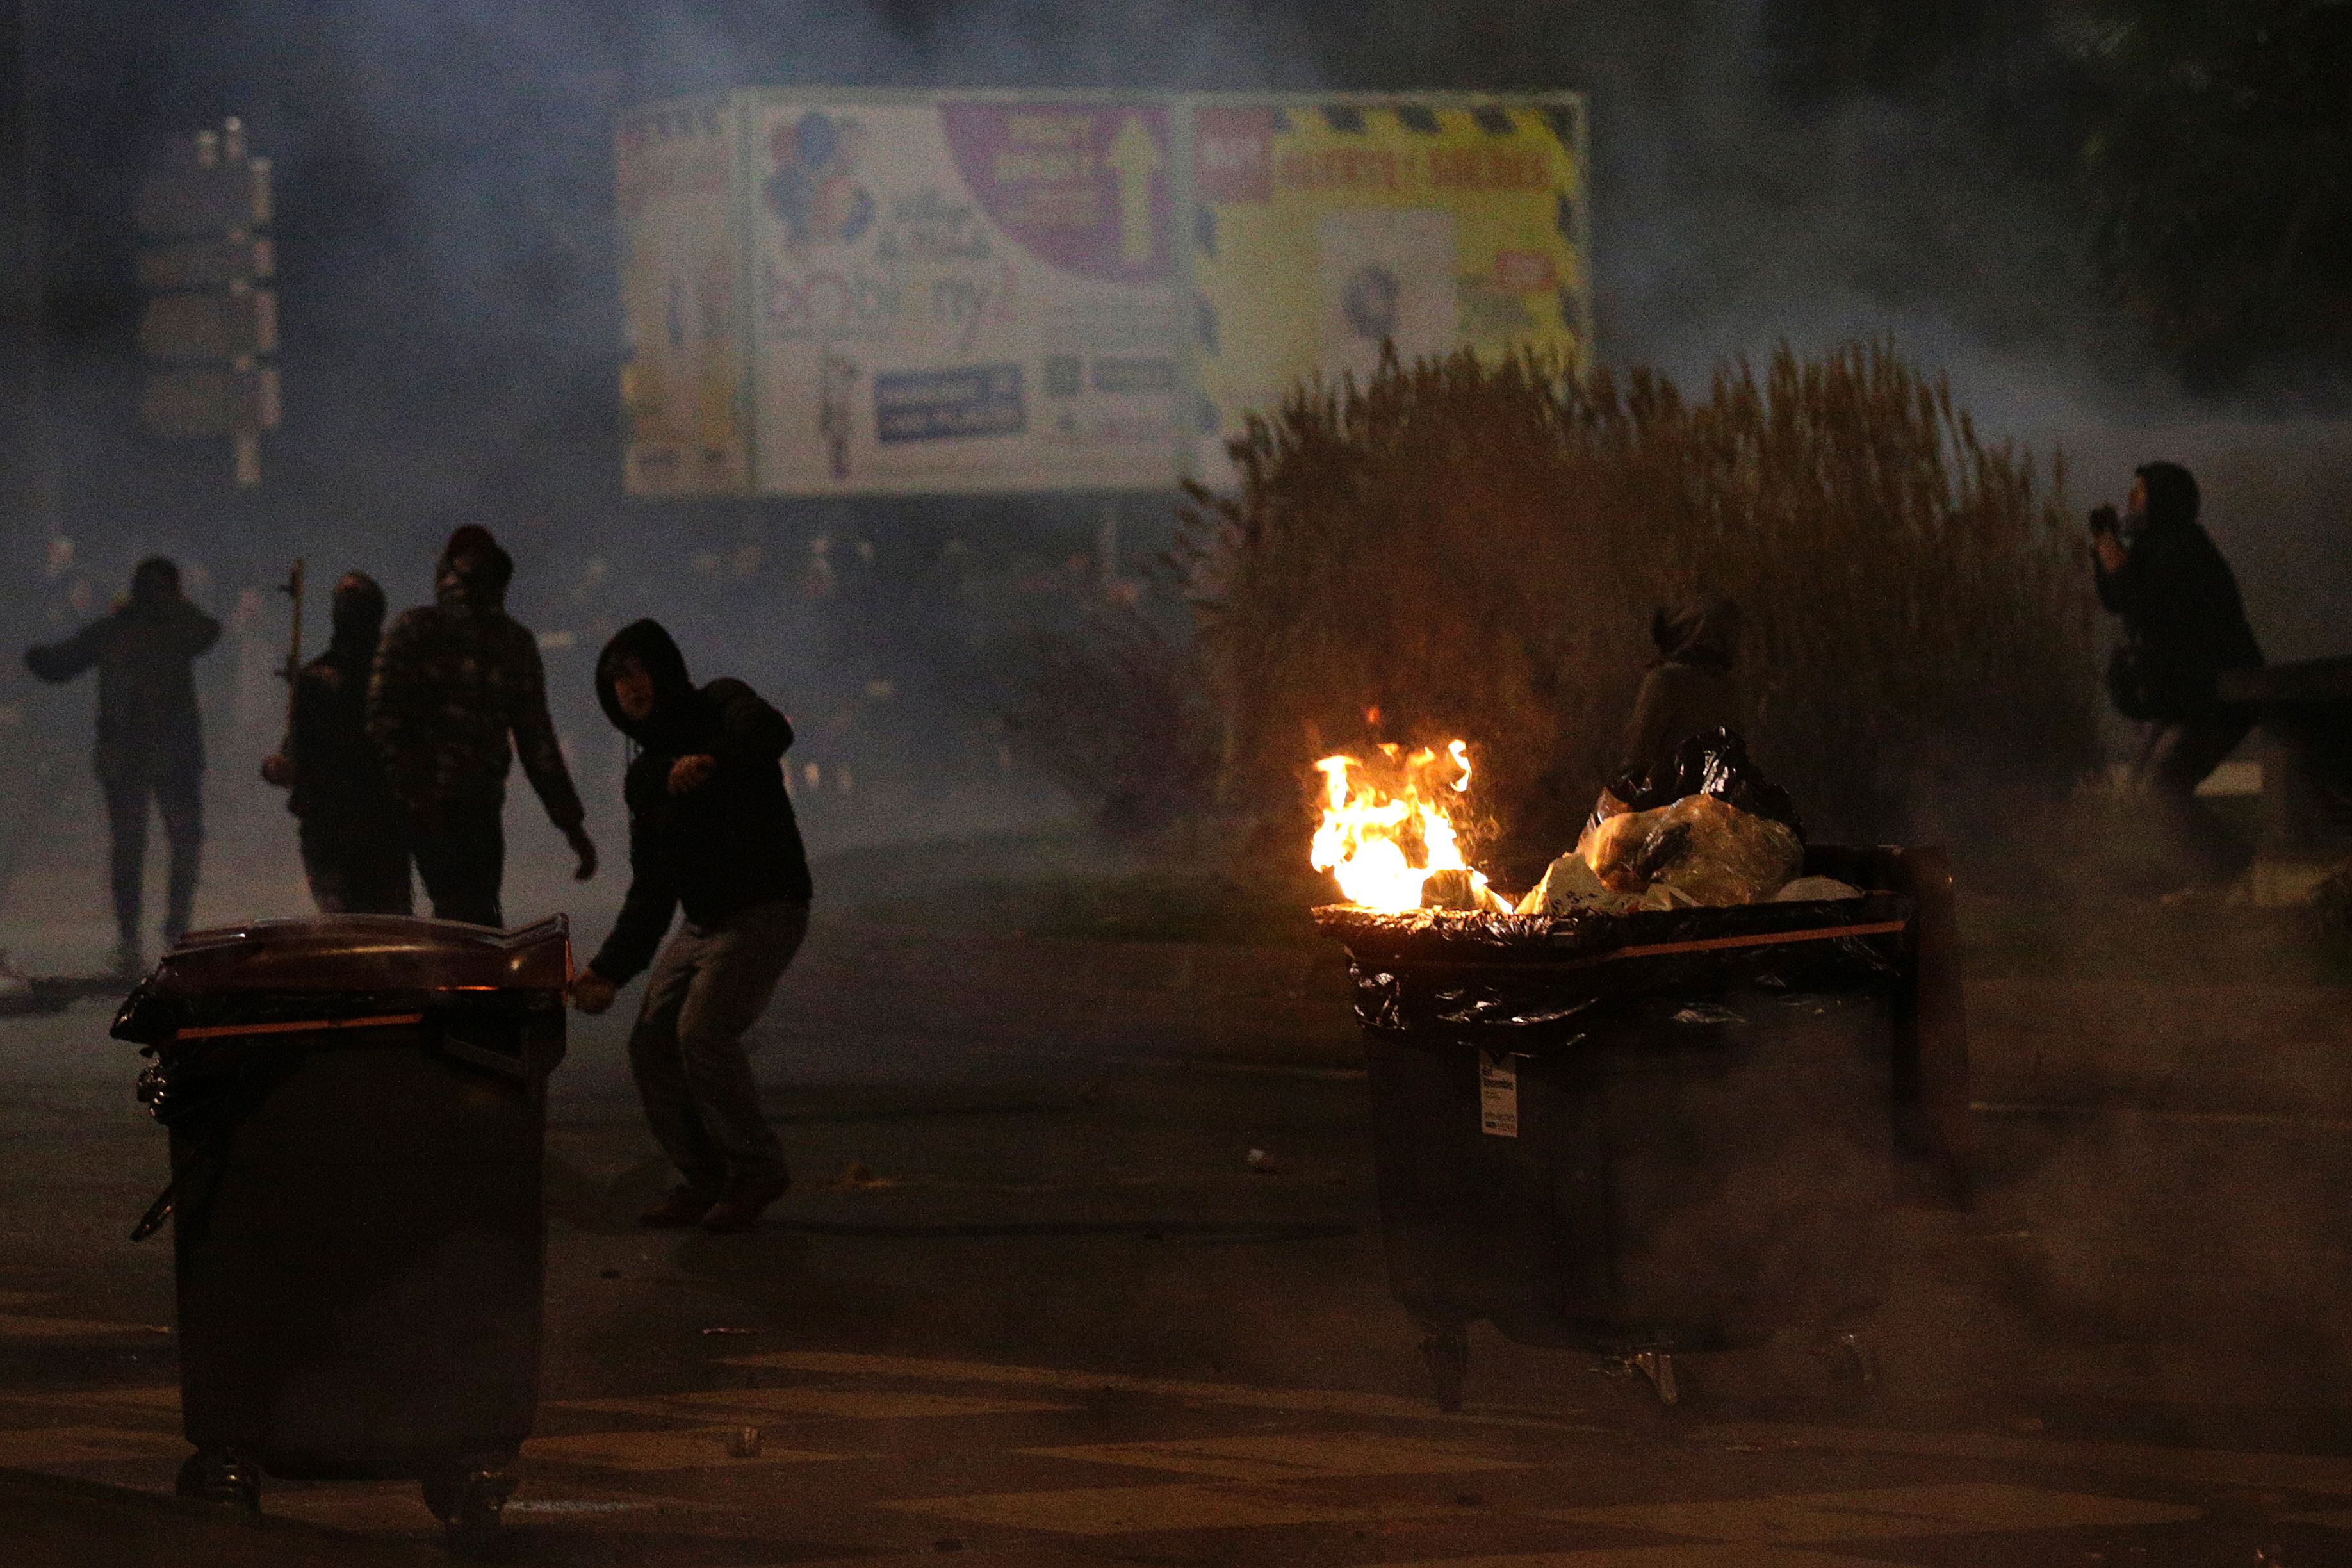 7-الحتجون يشتبكون مع الشرطة